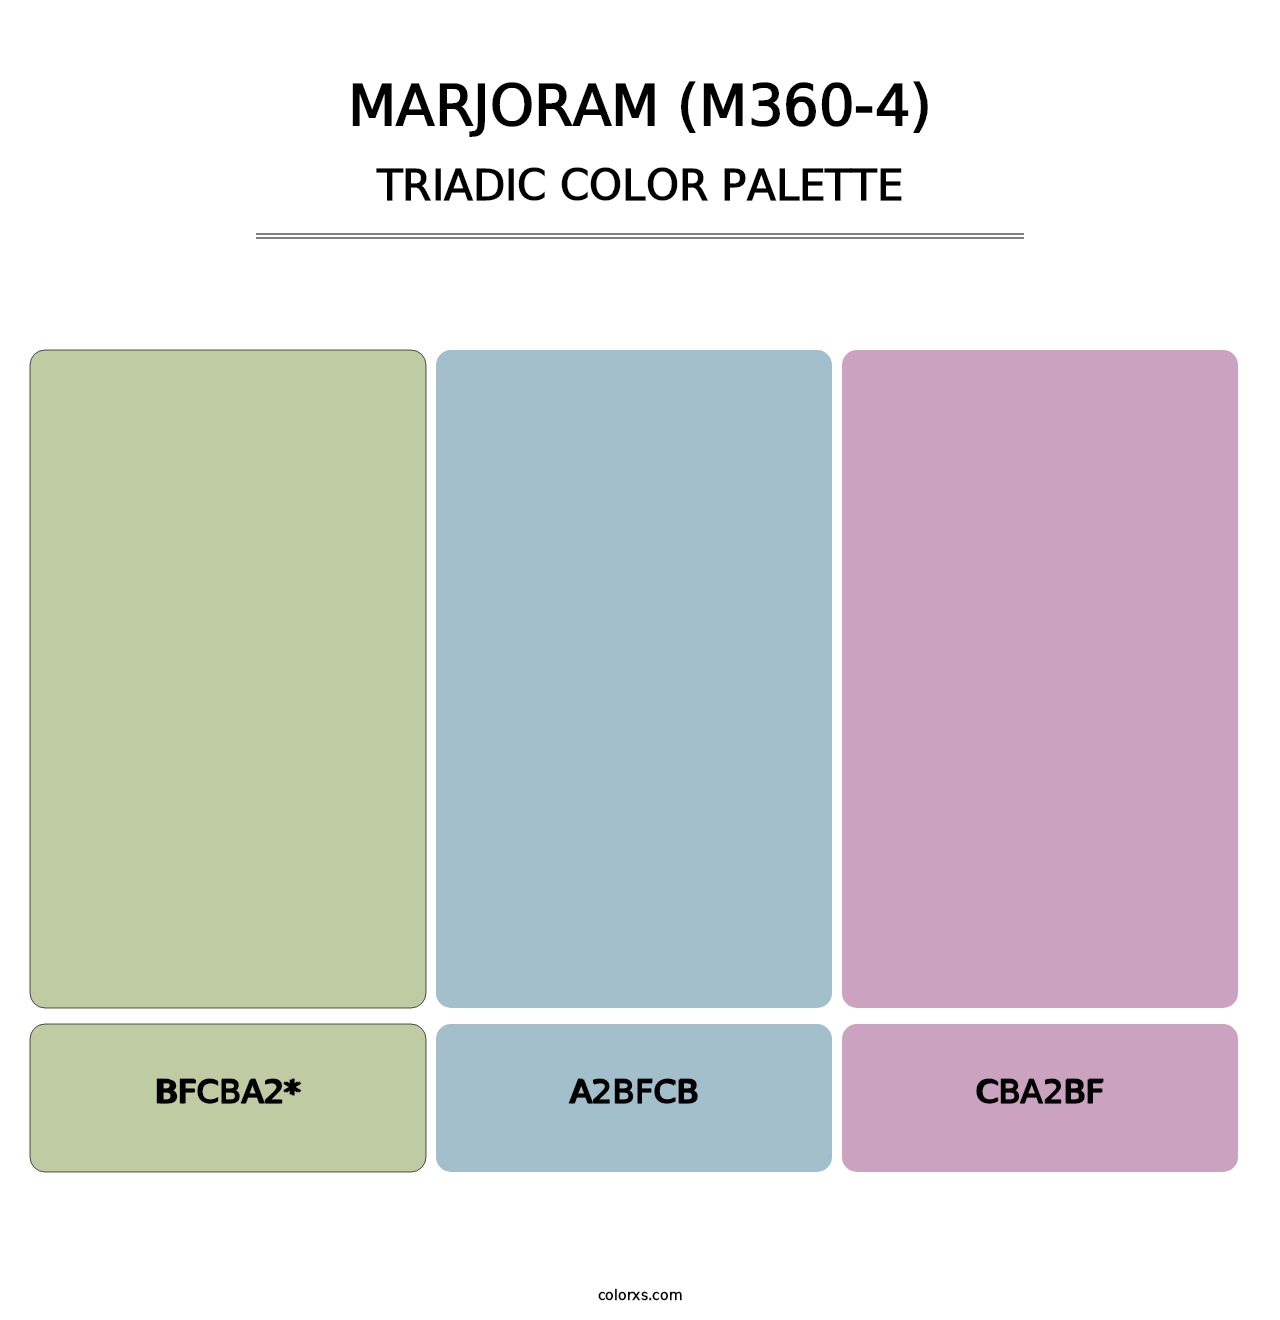 Marjoram (M360-4) - Triadic Color Palette